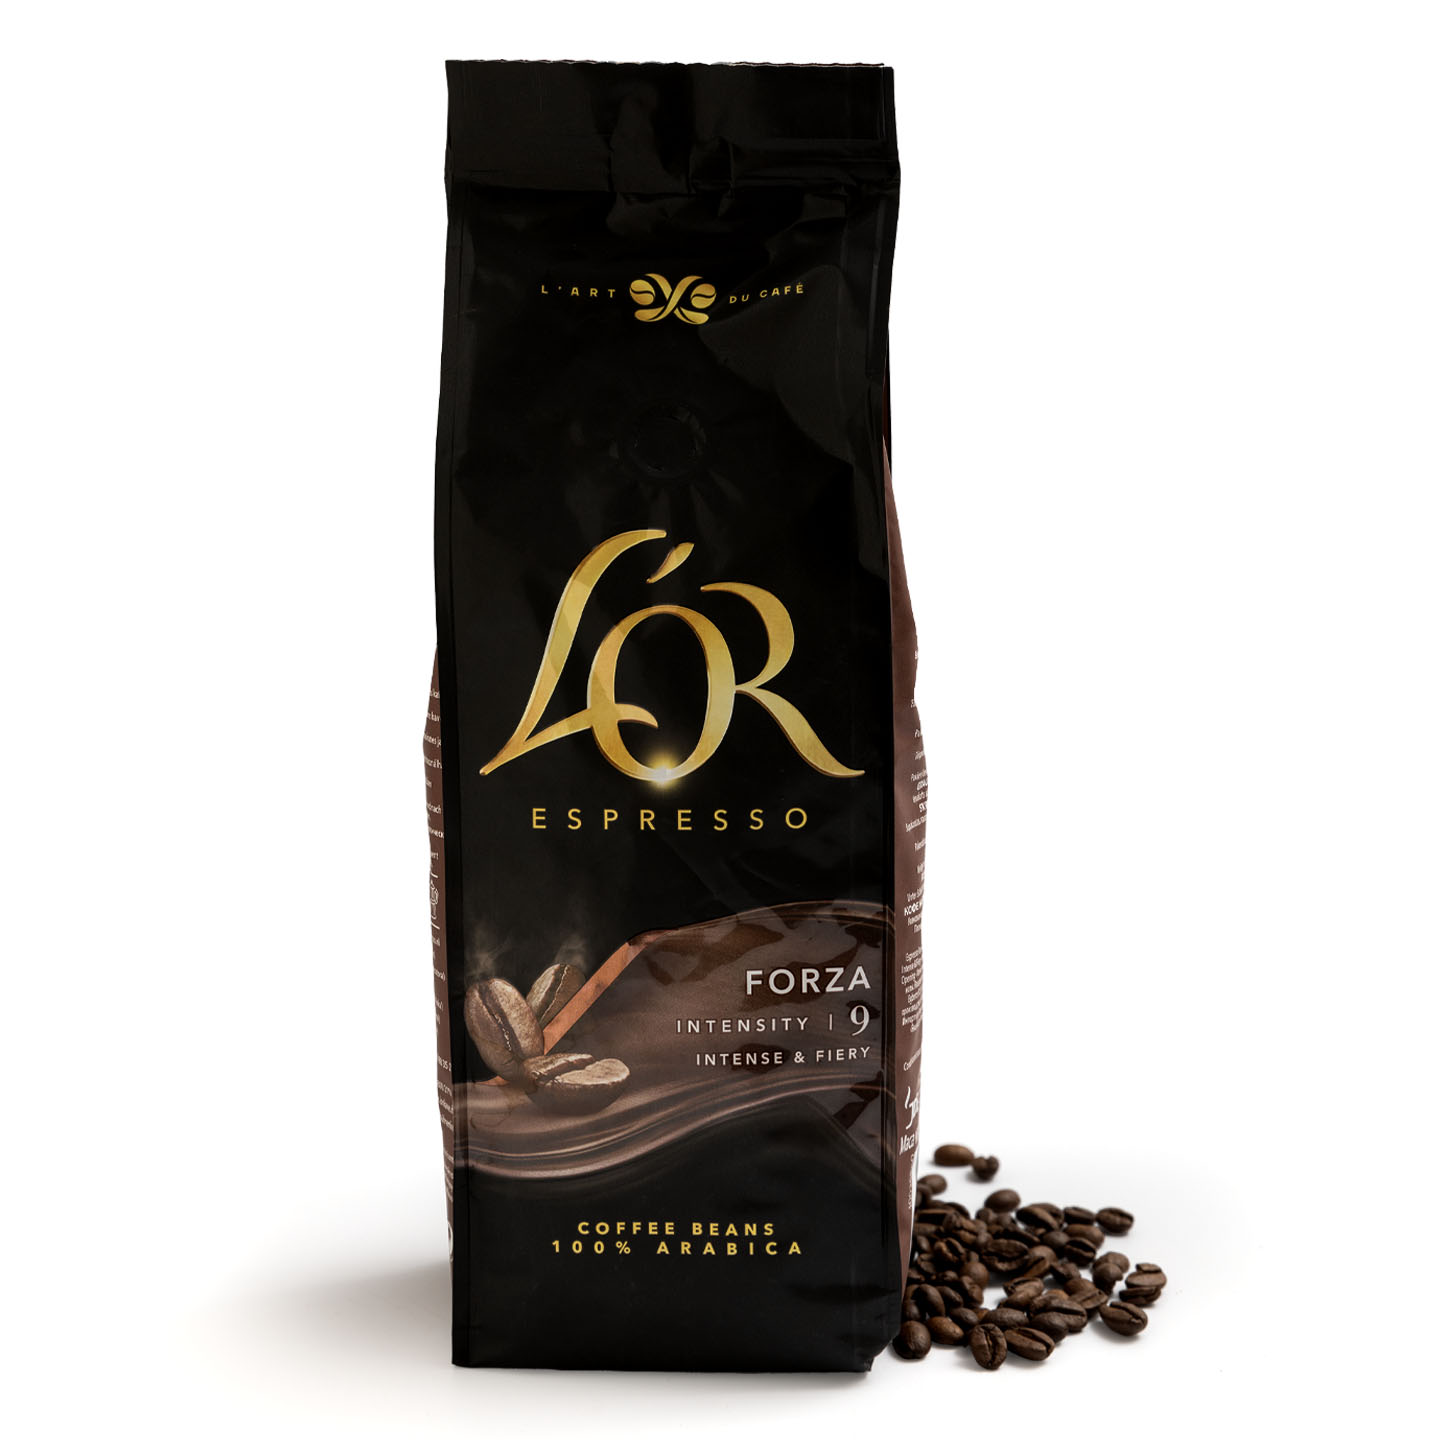 Cafea boabe Espresso Forza, 100% Arabica L'Or 500g